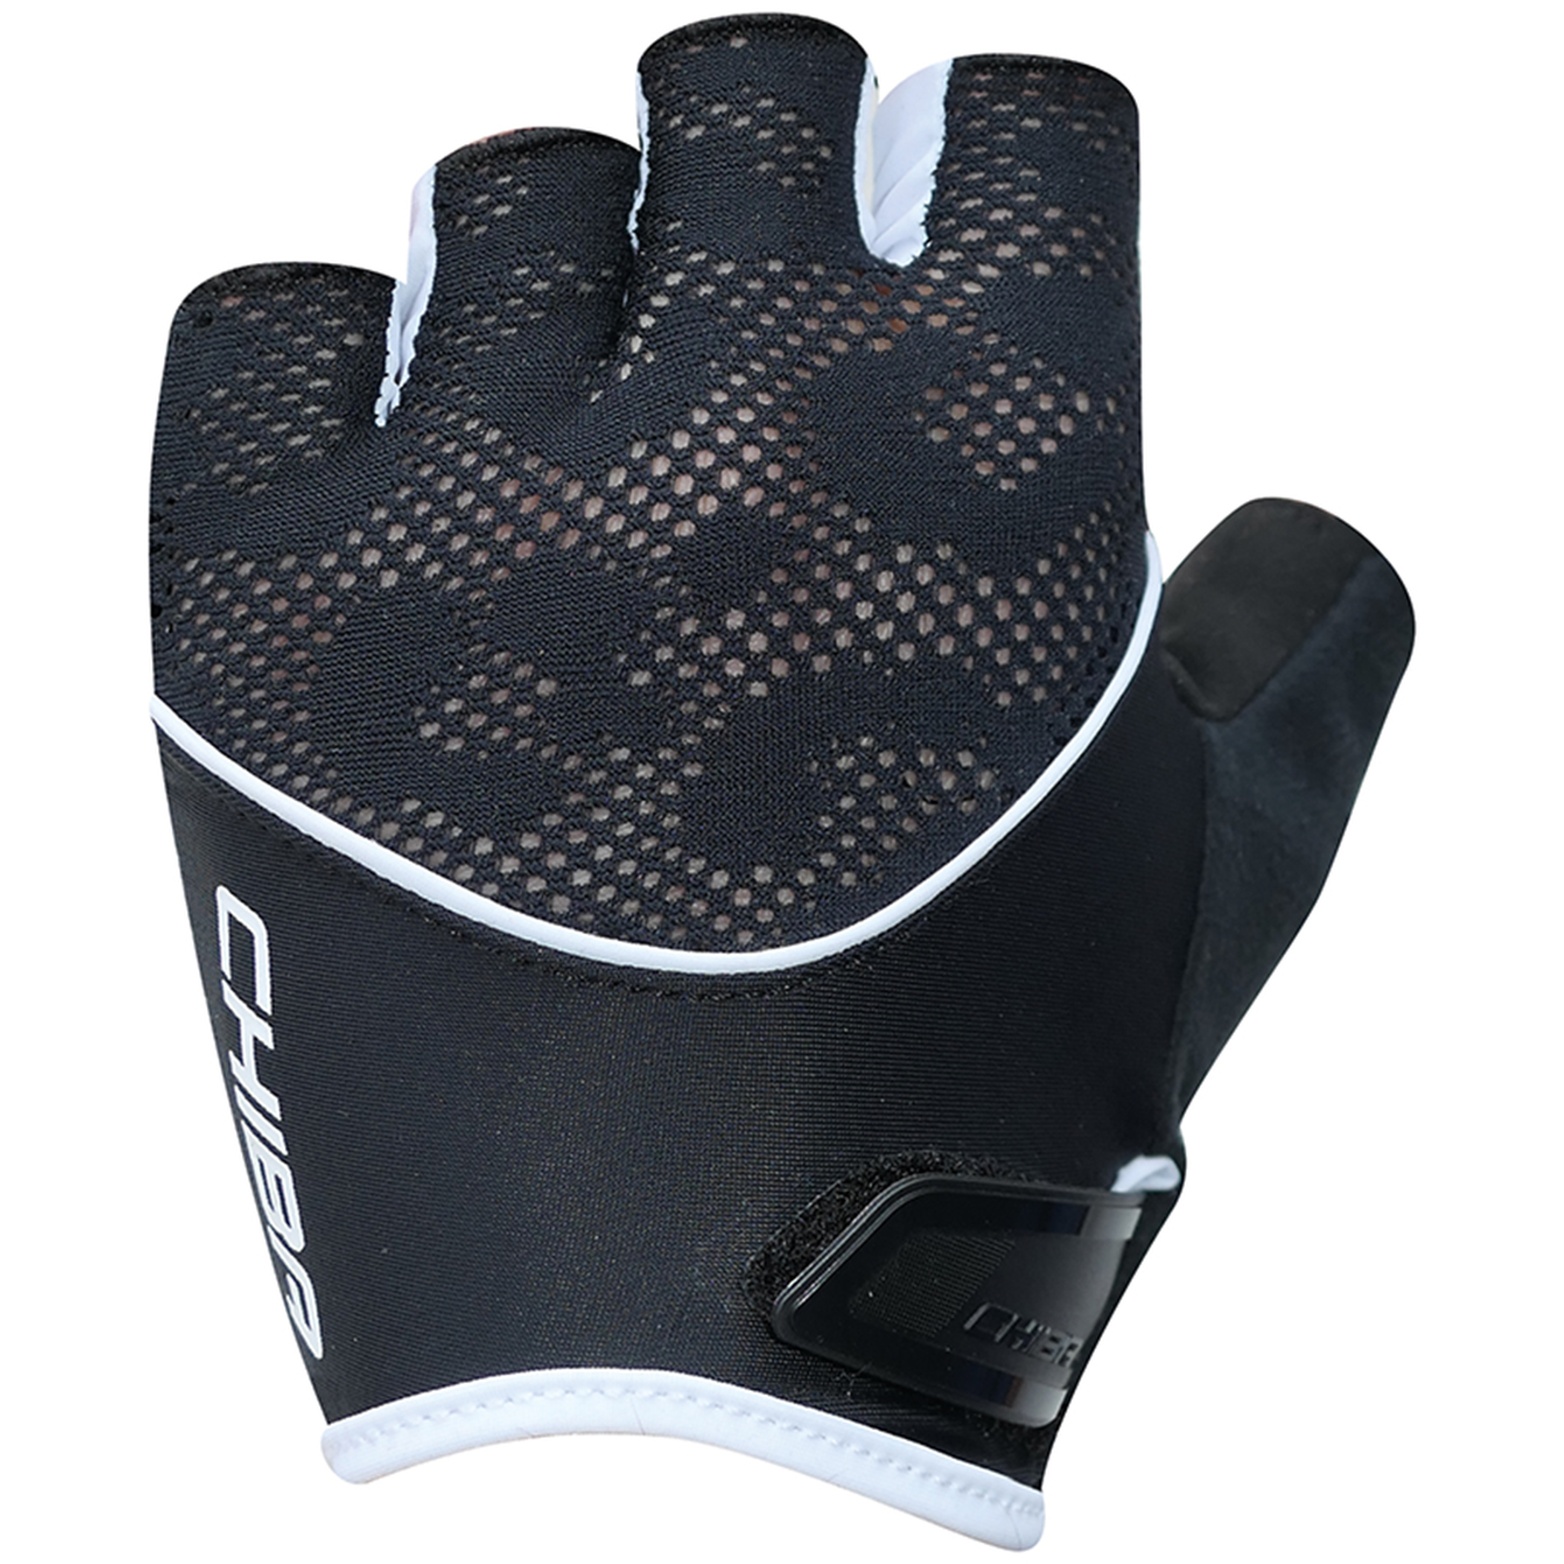 Produktbild von Chiba Gel Kurzfinger-Handschuhe Damen - schwarz/weiß